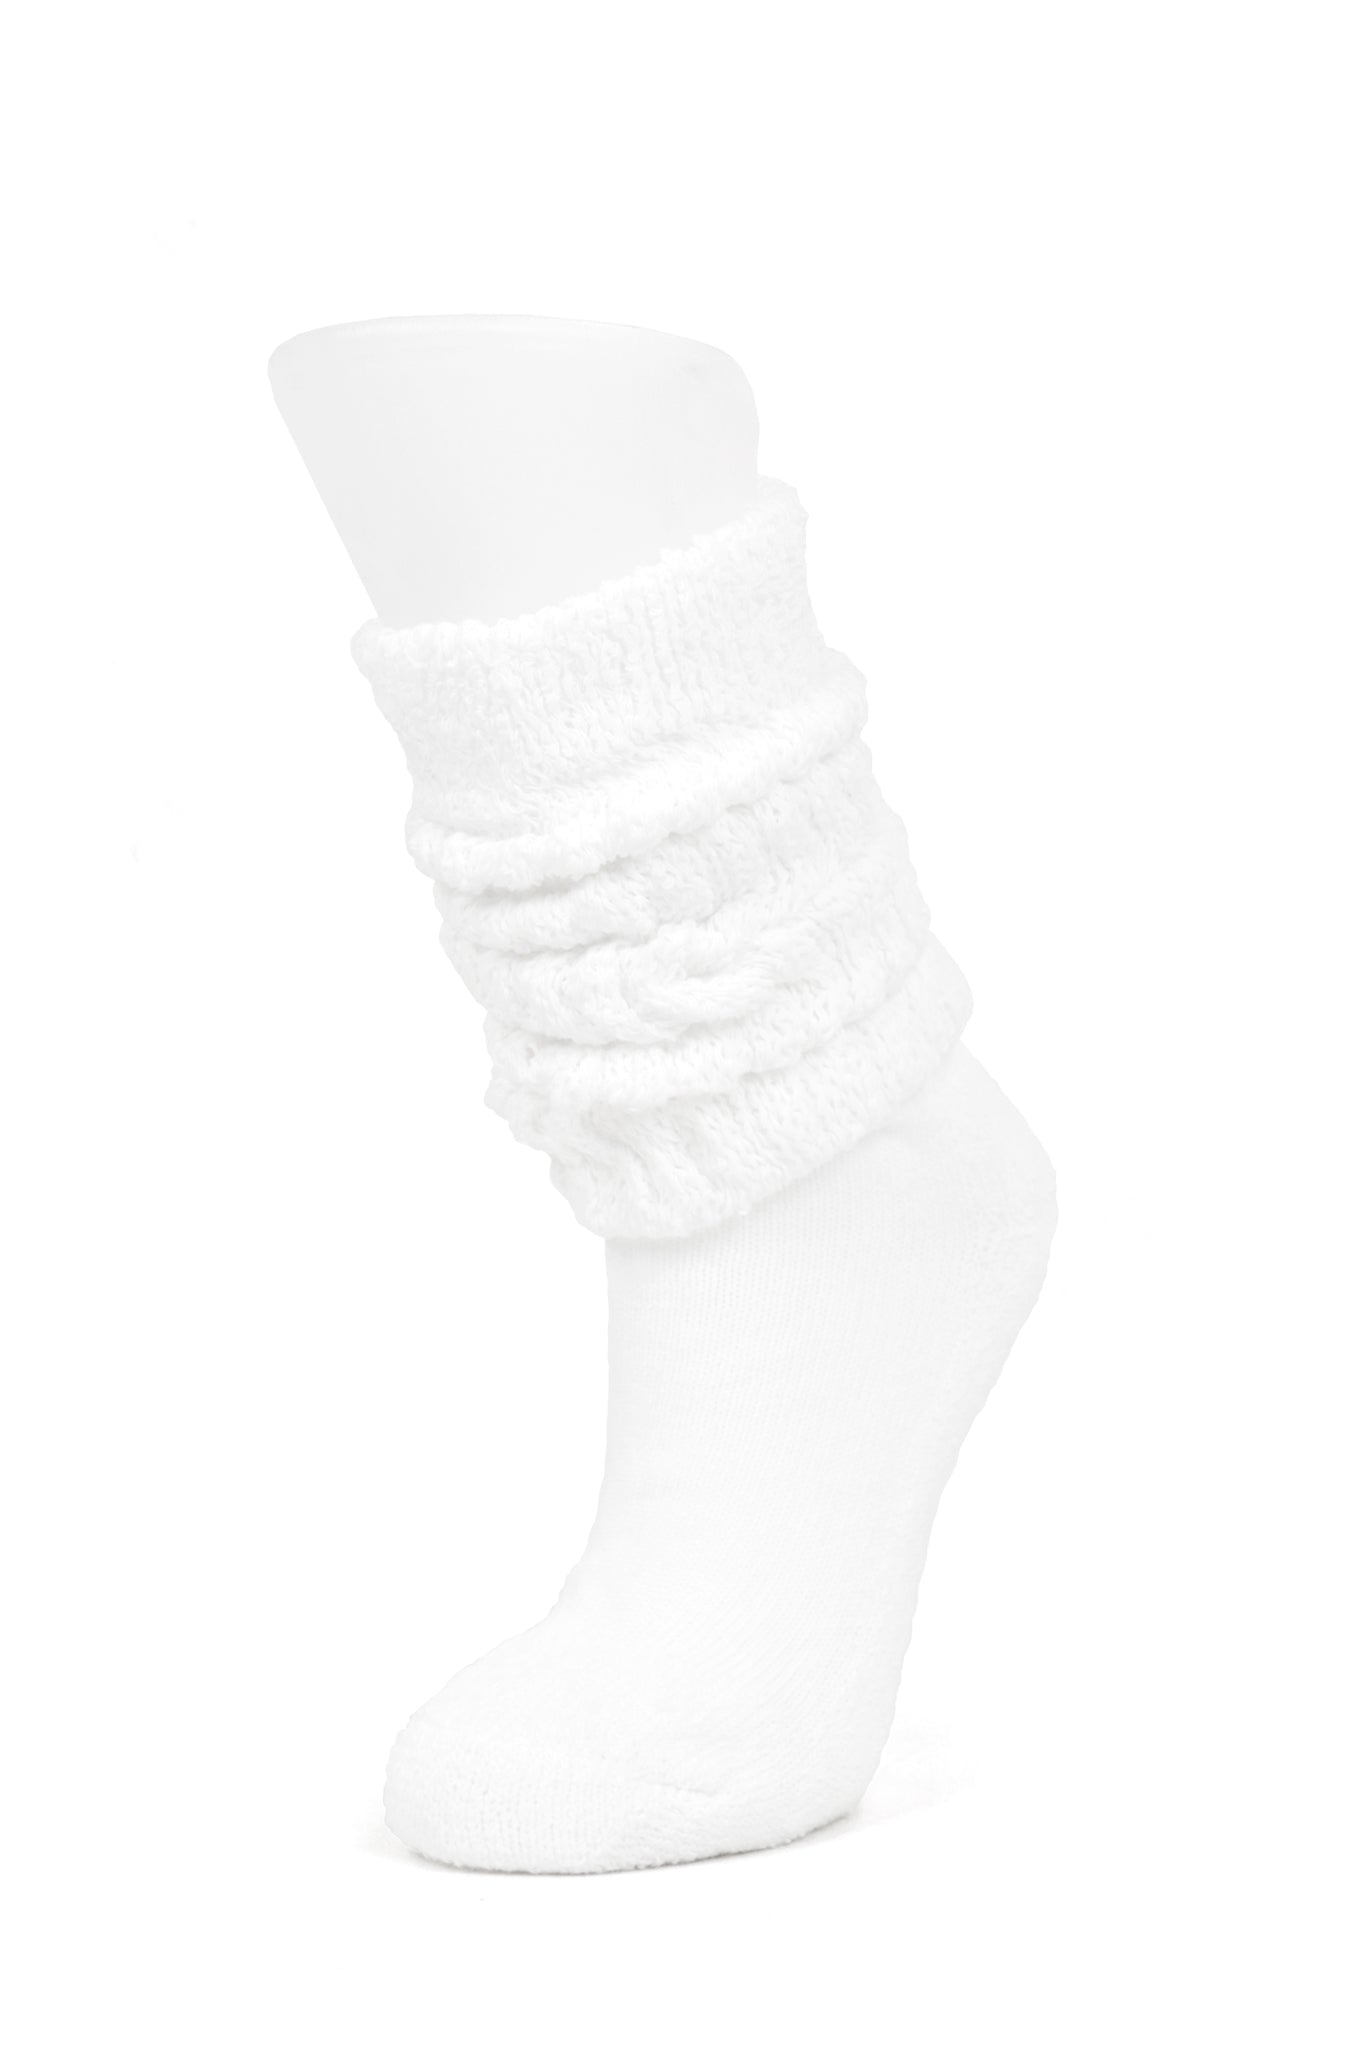 V-Day Slouch Socks, White